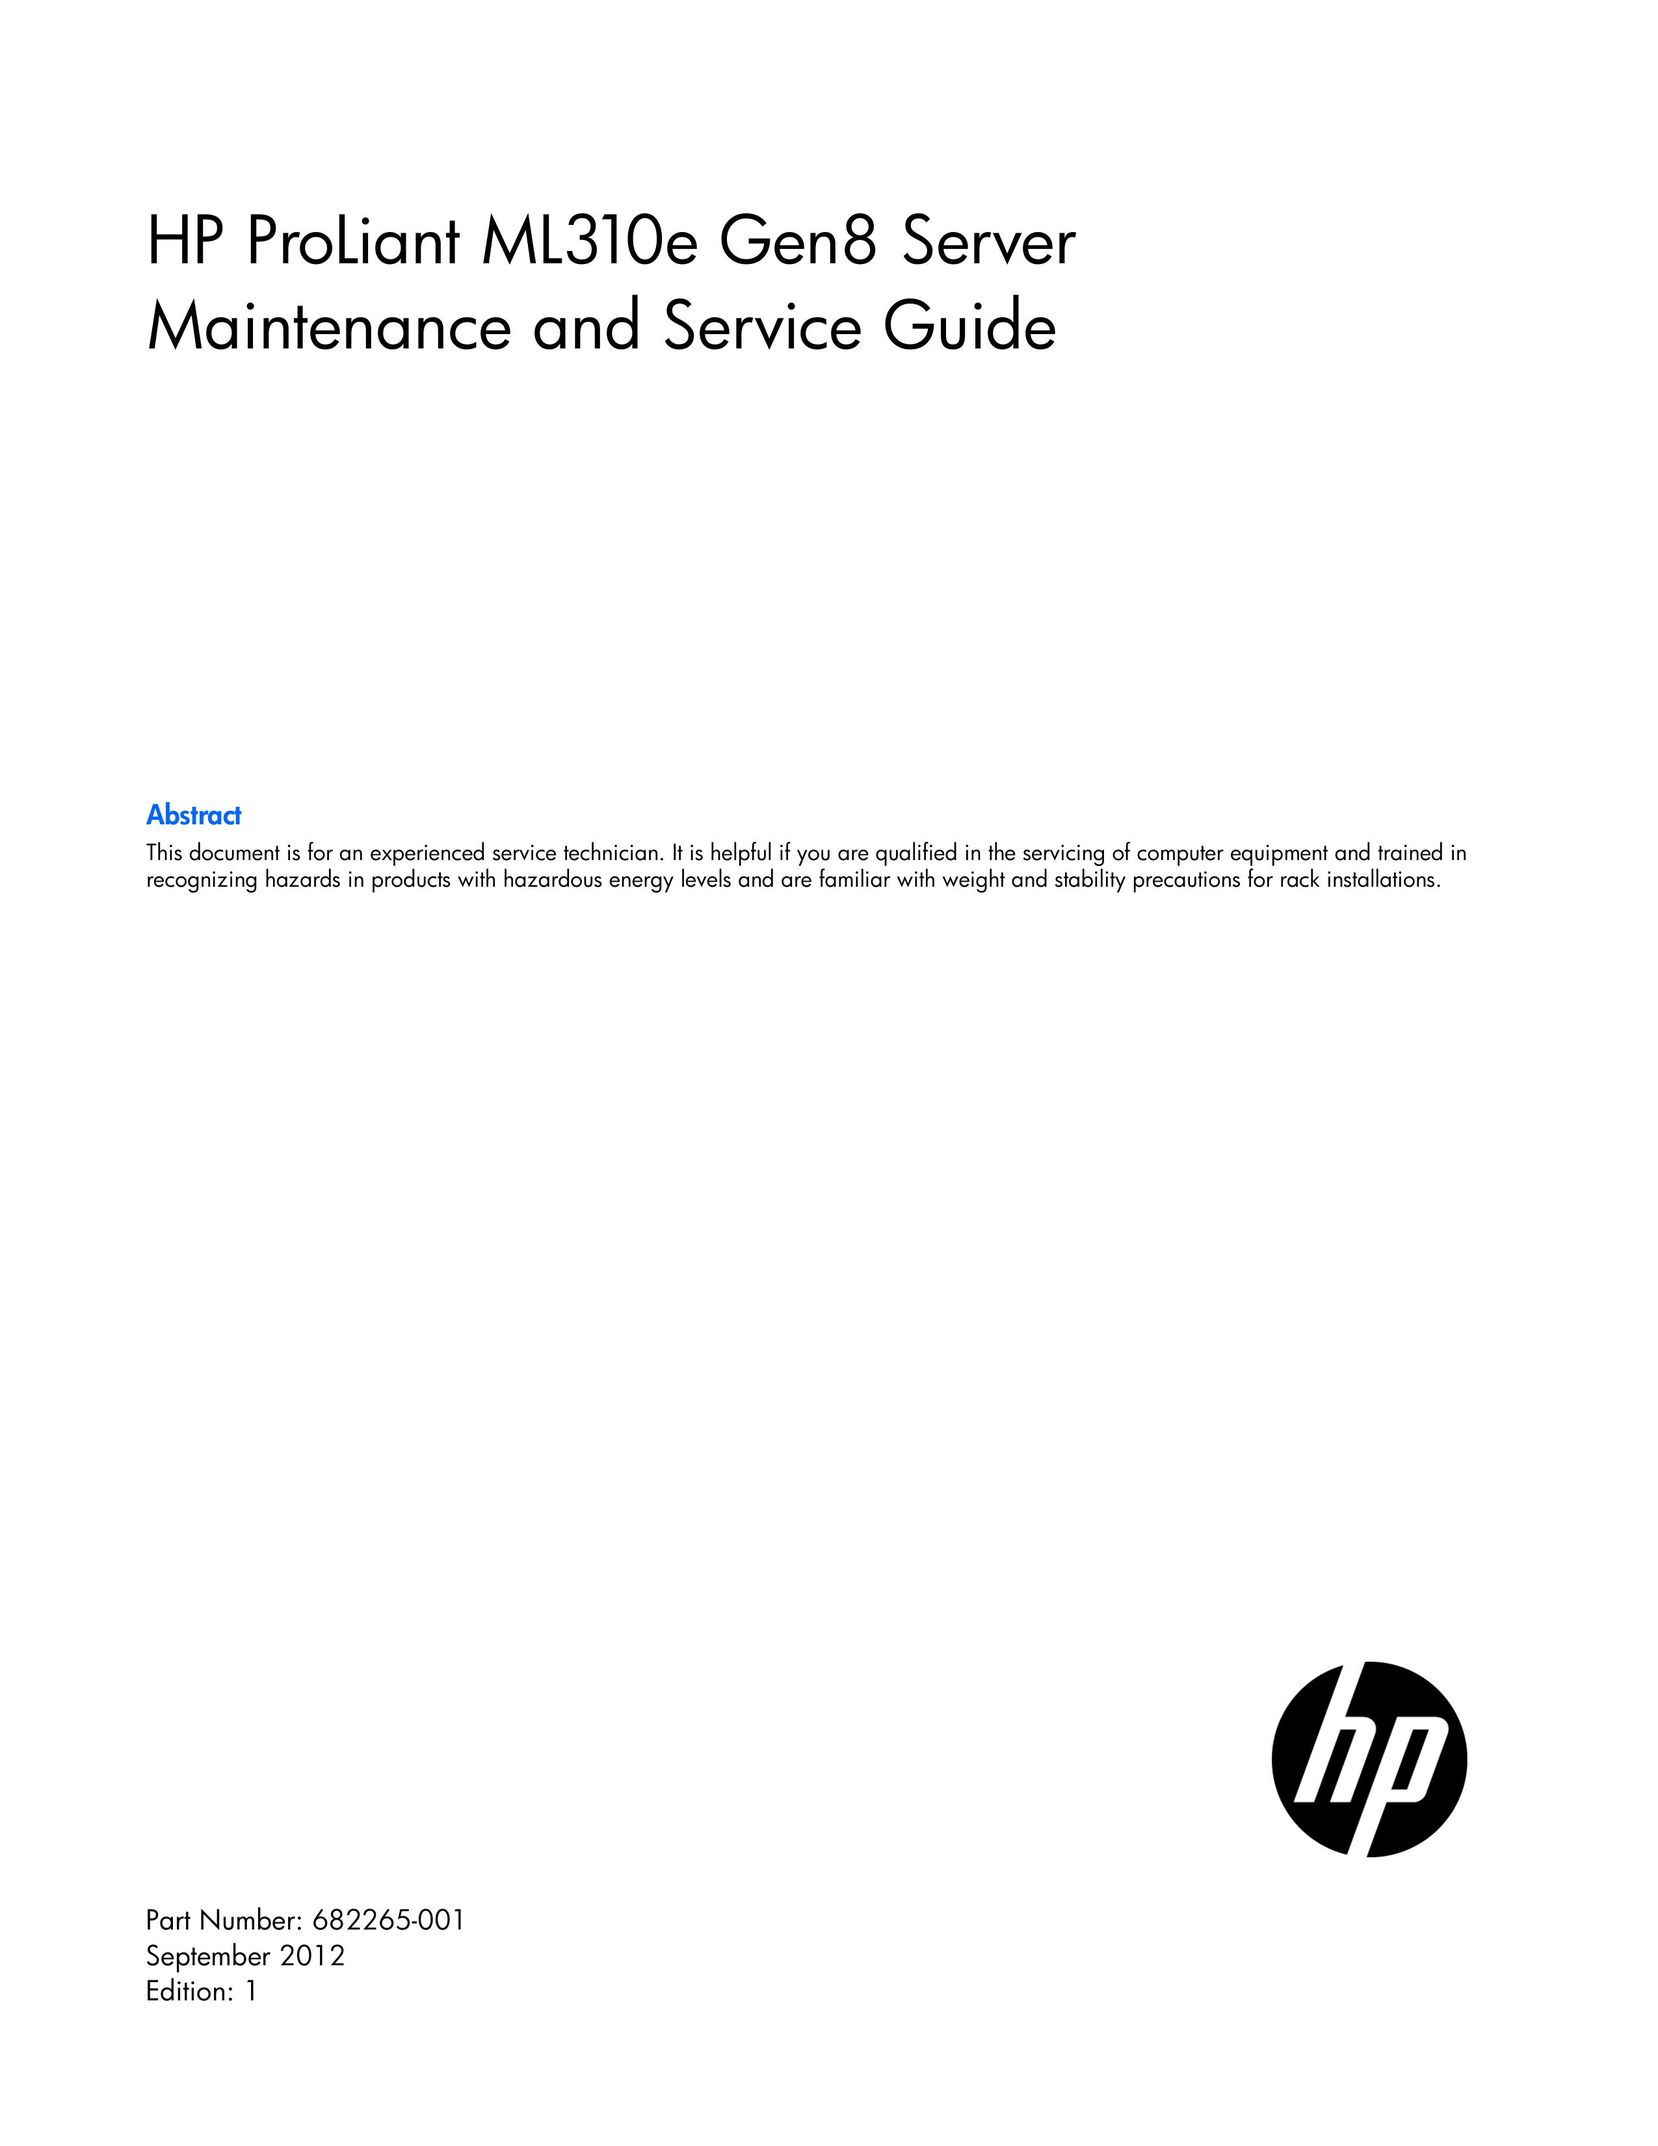 HP (Hewlett-Packard) 686234-S01 Server User Manual